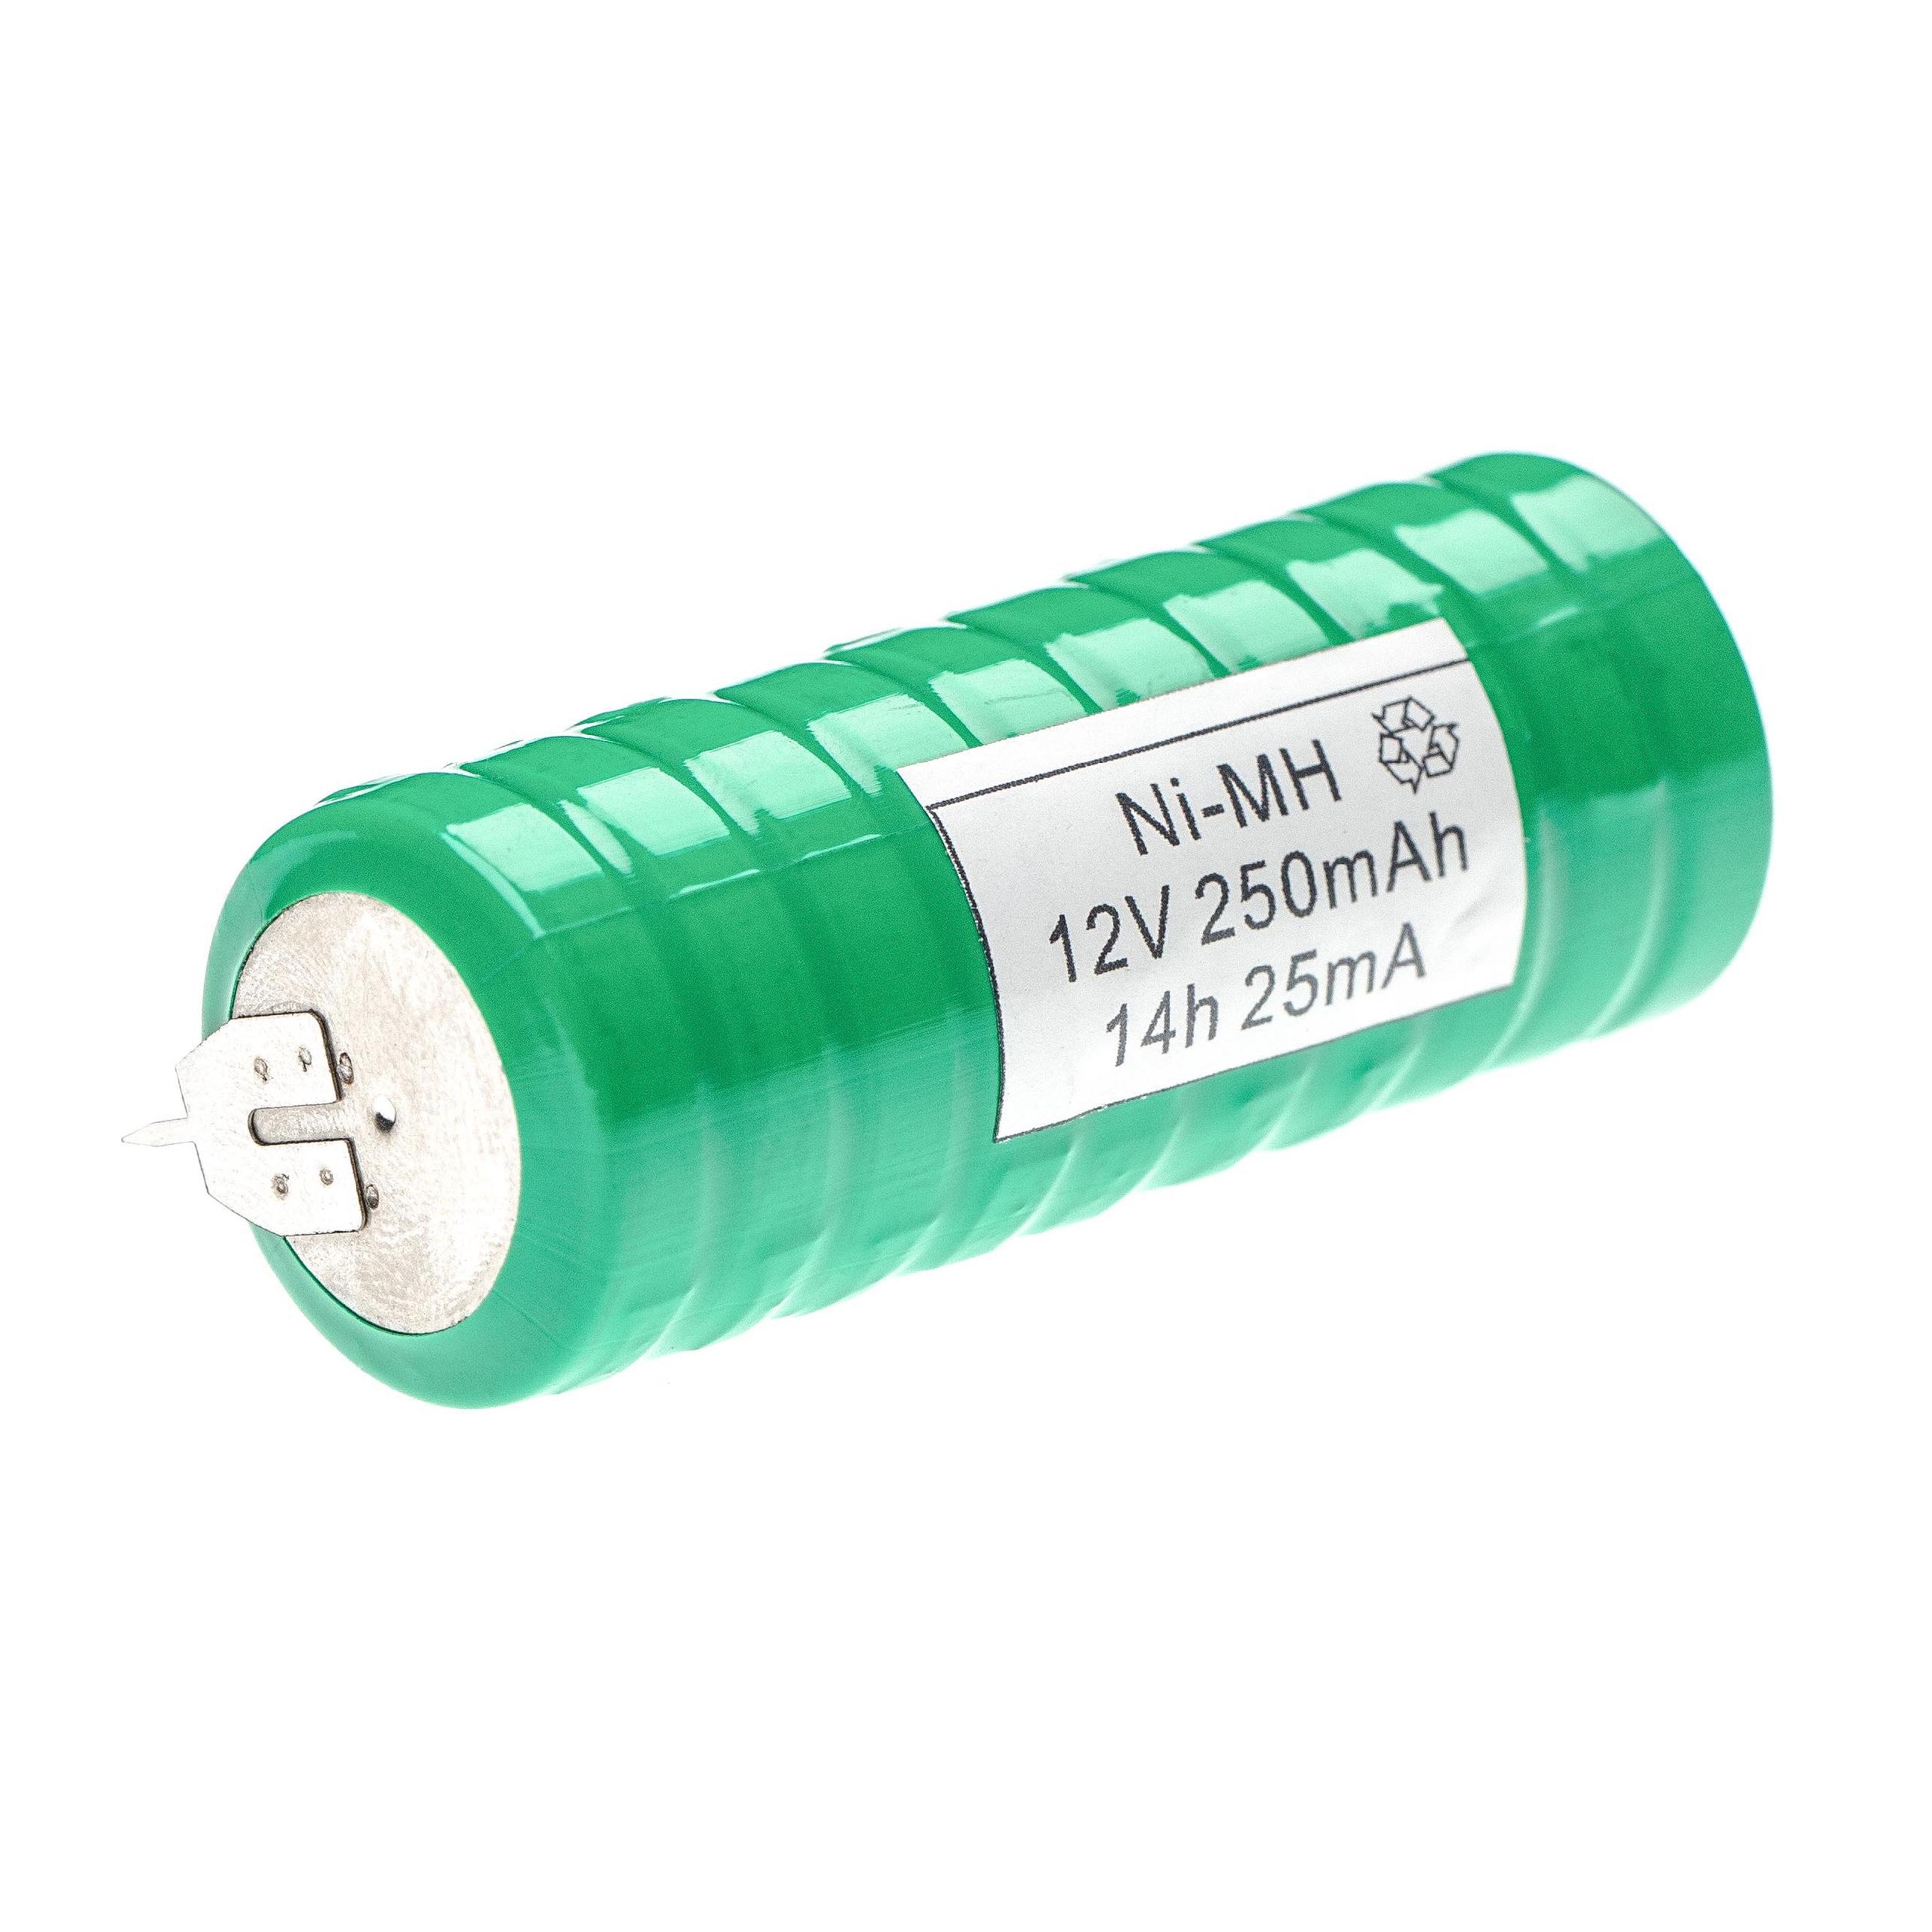 Batteria a bottone (10x cella) tipo V250H sostituisce V250H per modellismo, luci solari ecc. 